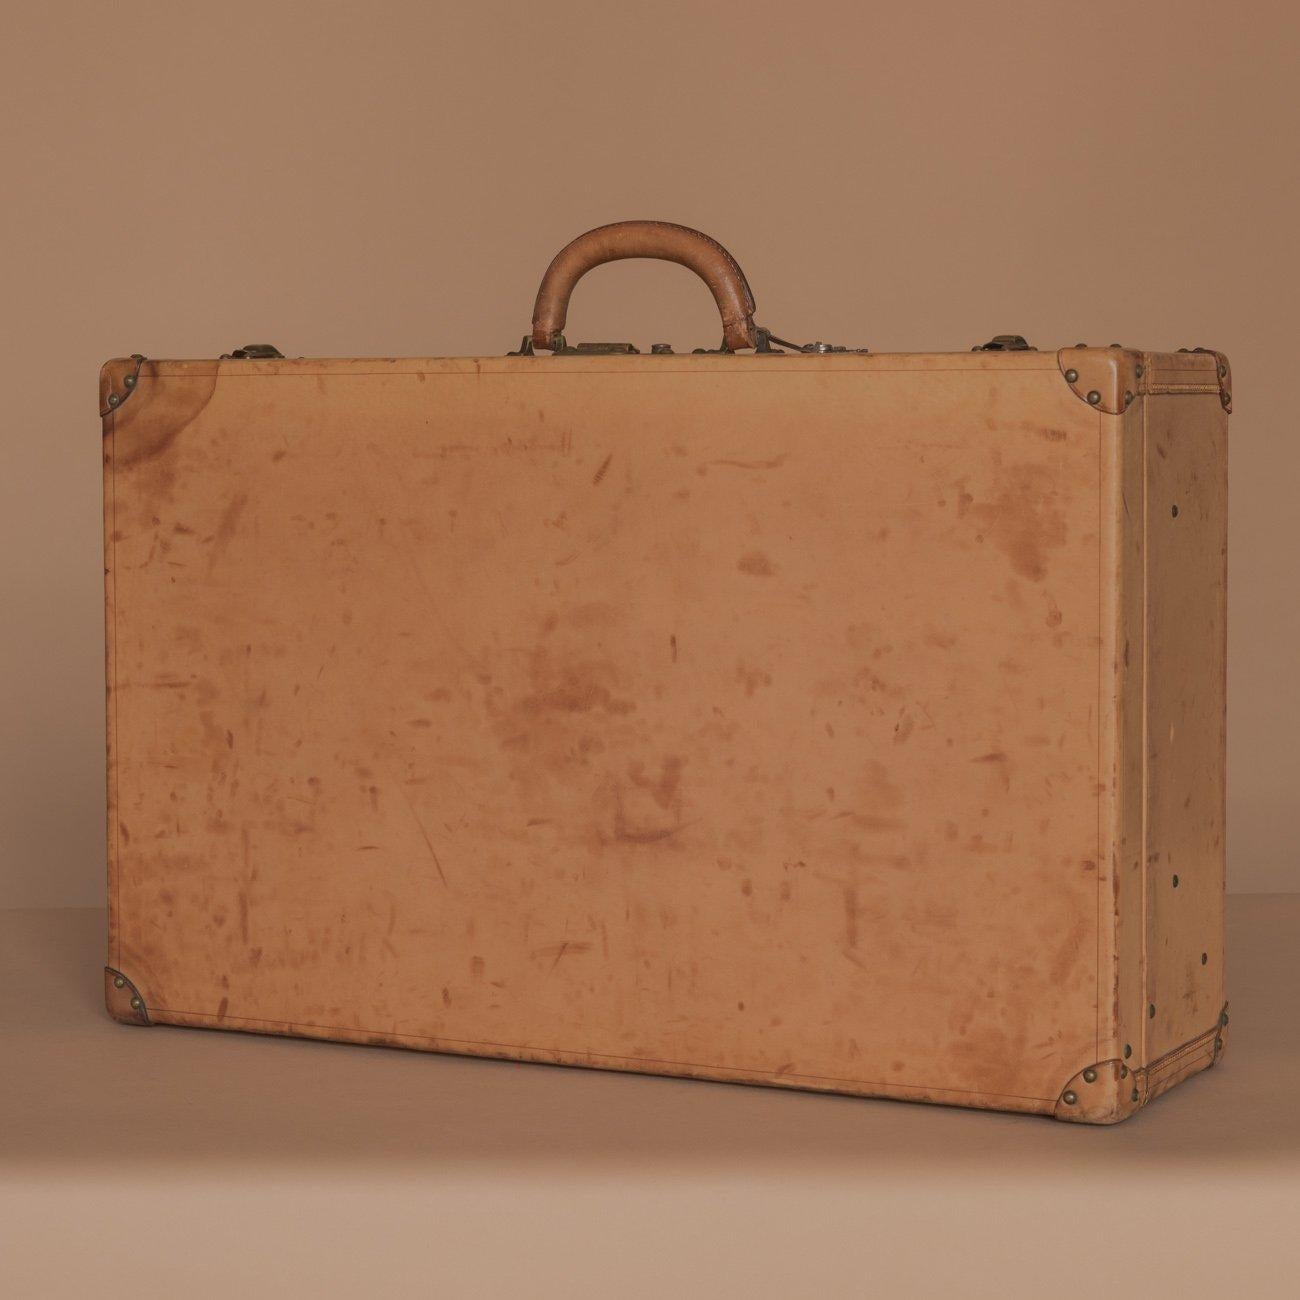 Une belle valise 'Vache Naturelle' de Louis Vuitton. Avec plateau d'origine et intérieur doublé de cuir qui aurait pu contenir une série d'accessoires ; Circa 1935. Cette mallette comporte également trois touches.

Dimensions : 67,5 cm/26⅝ pouces x